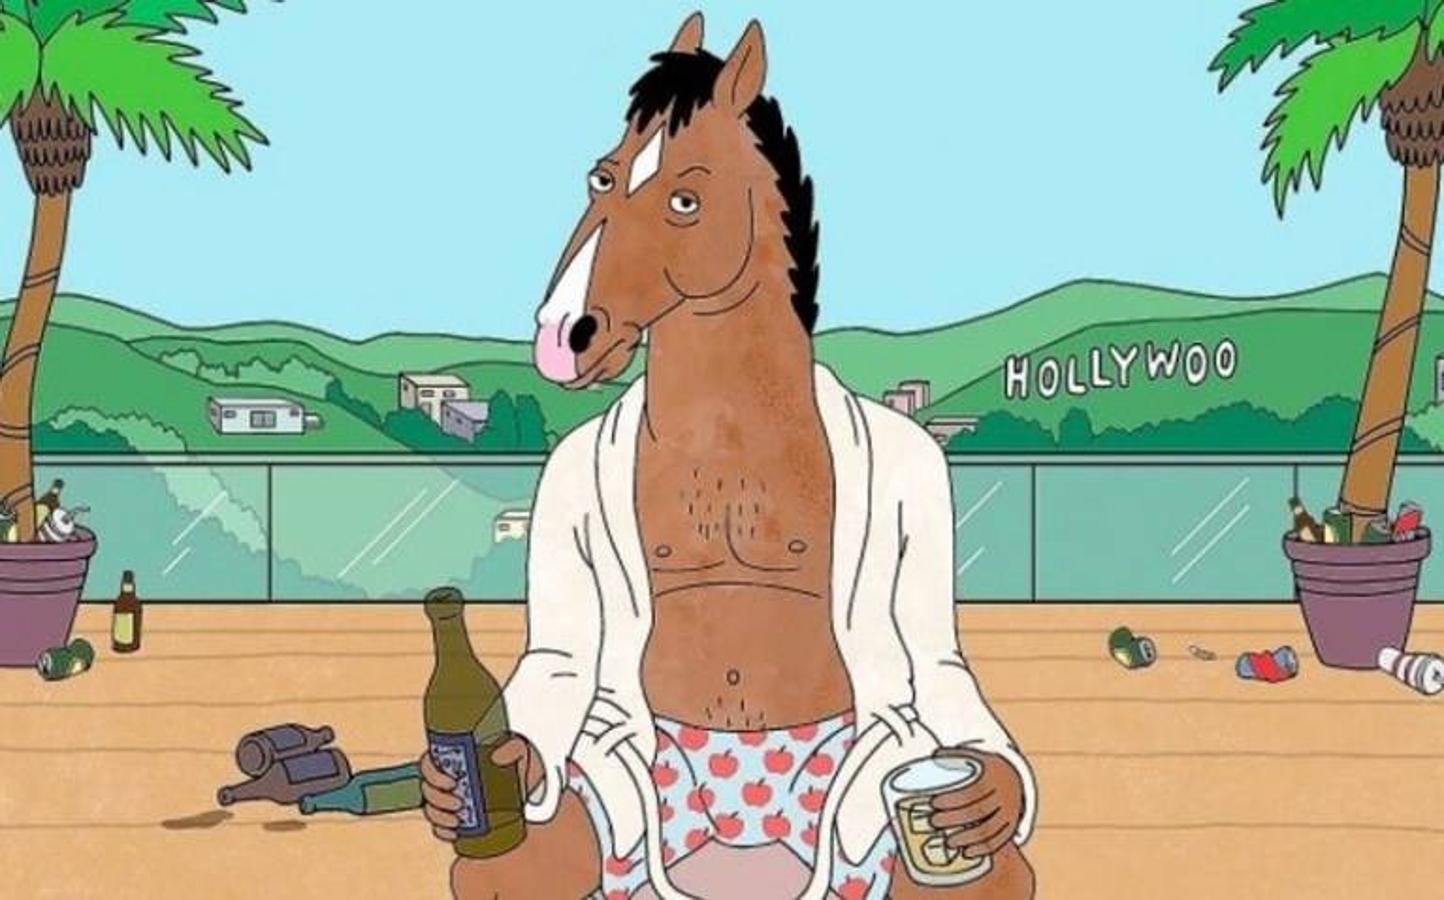 BOJACK HORSEMAN. Temporada 6 (Netflix - 25 octubre). En un mundo donde humanos y animales antropomórficos conviven, el protagonista de la serie es el caballo BoJack Horseman, protagonista de la telecomedia "Horsin' Around" en la década de los 90.